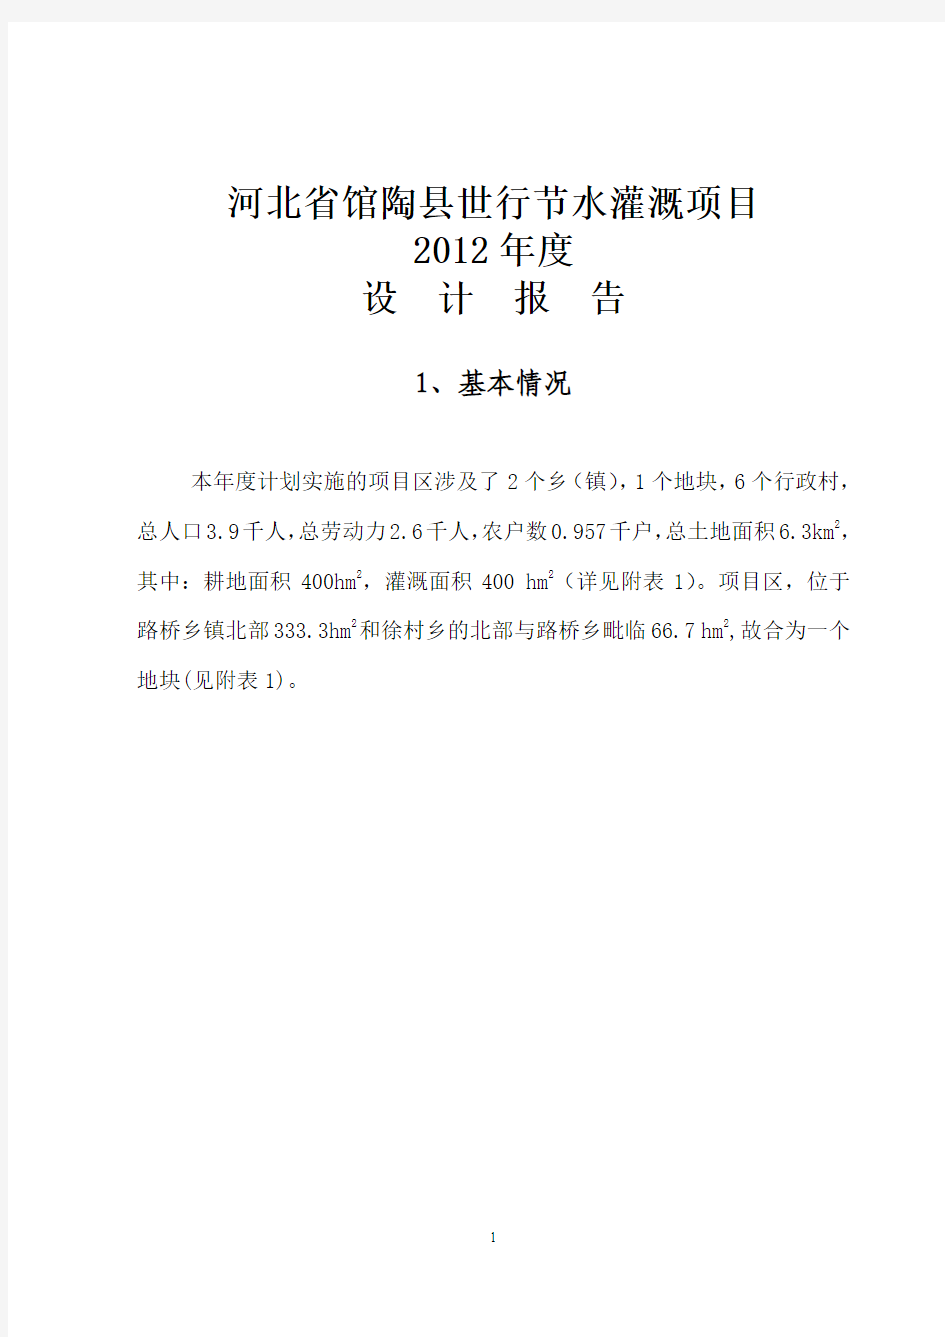 世行节水项目县馆陶县2012年度设计报告